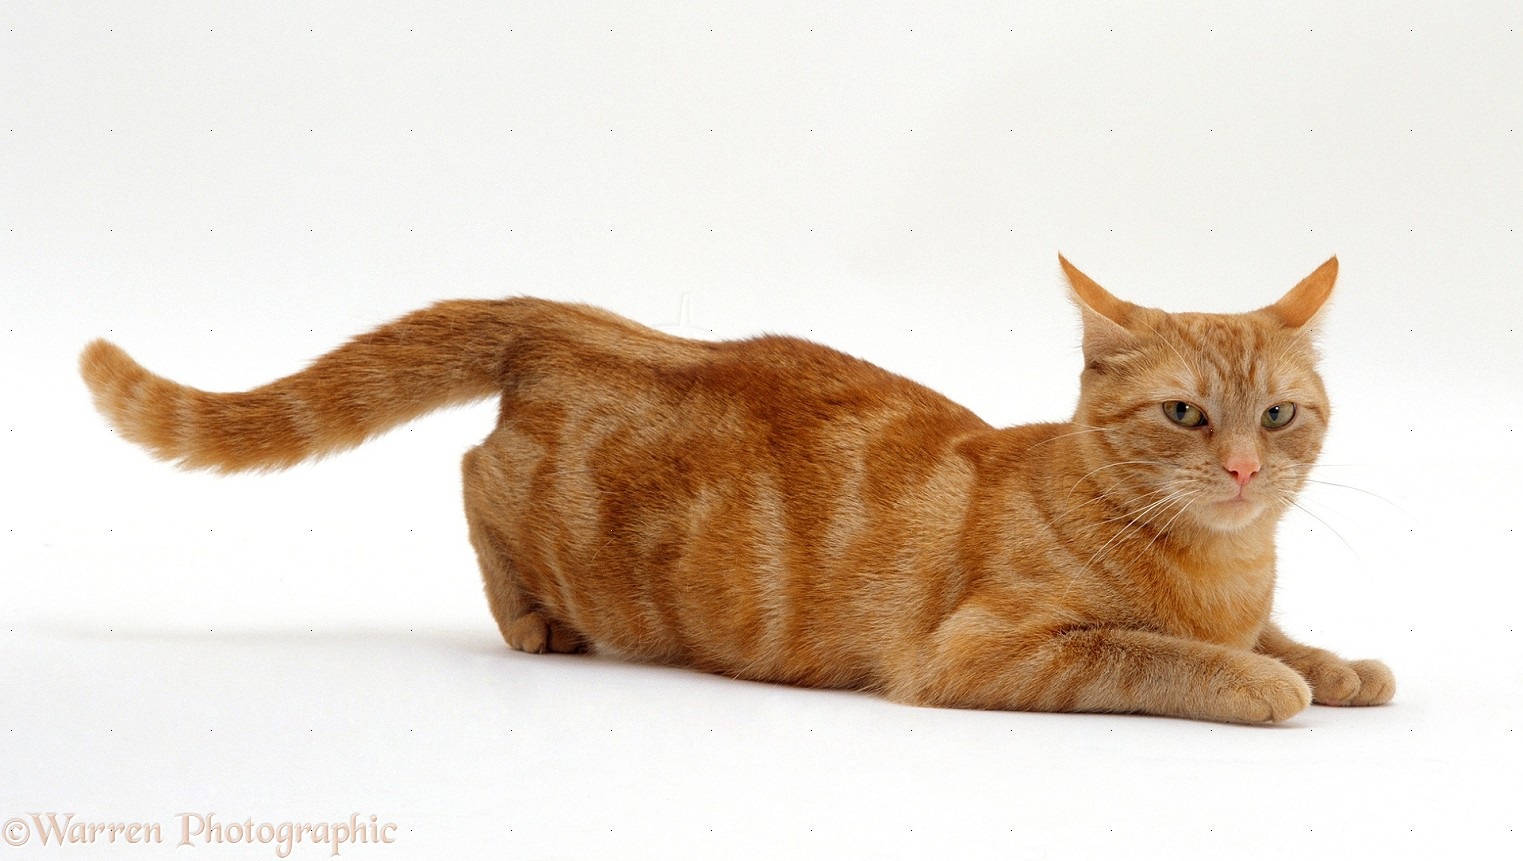 Inilah 5 Perilaku Kucing yang Unik, Apakah Dengan Memakan Rumput Kucing Bisa Kenyang? Loh Ga Bahaya Tah?